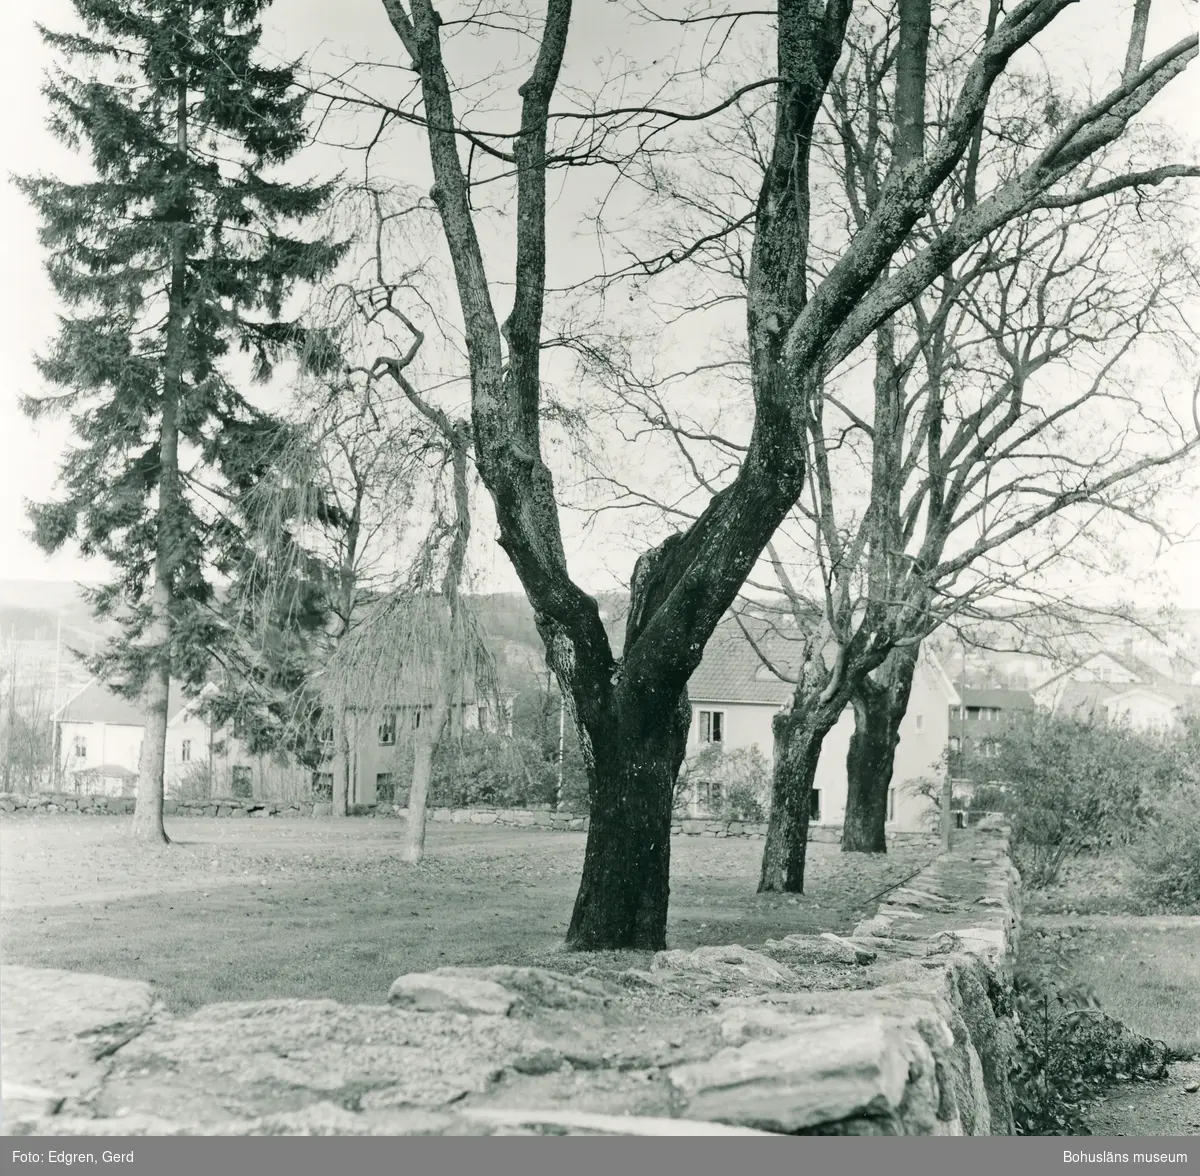 Text till bilden: "Kolerakyrkogården. Östra delen av kyrkogården. I mitten syns en hängask - ett ympat träd som ofta återfinns på kyrkogårdarna i landskapet".